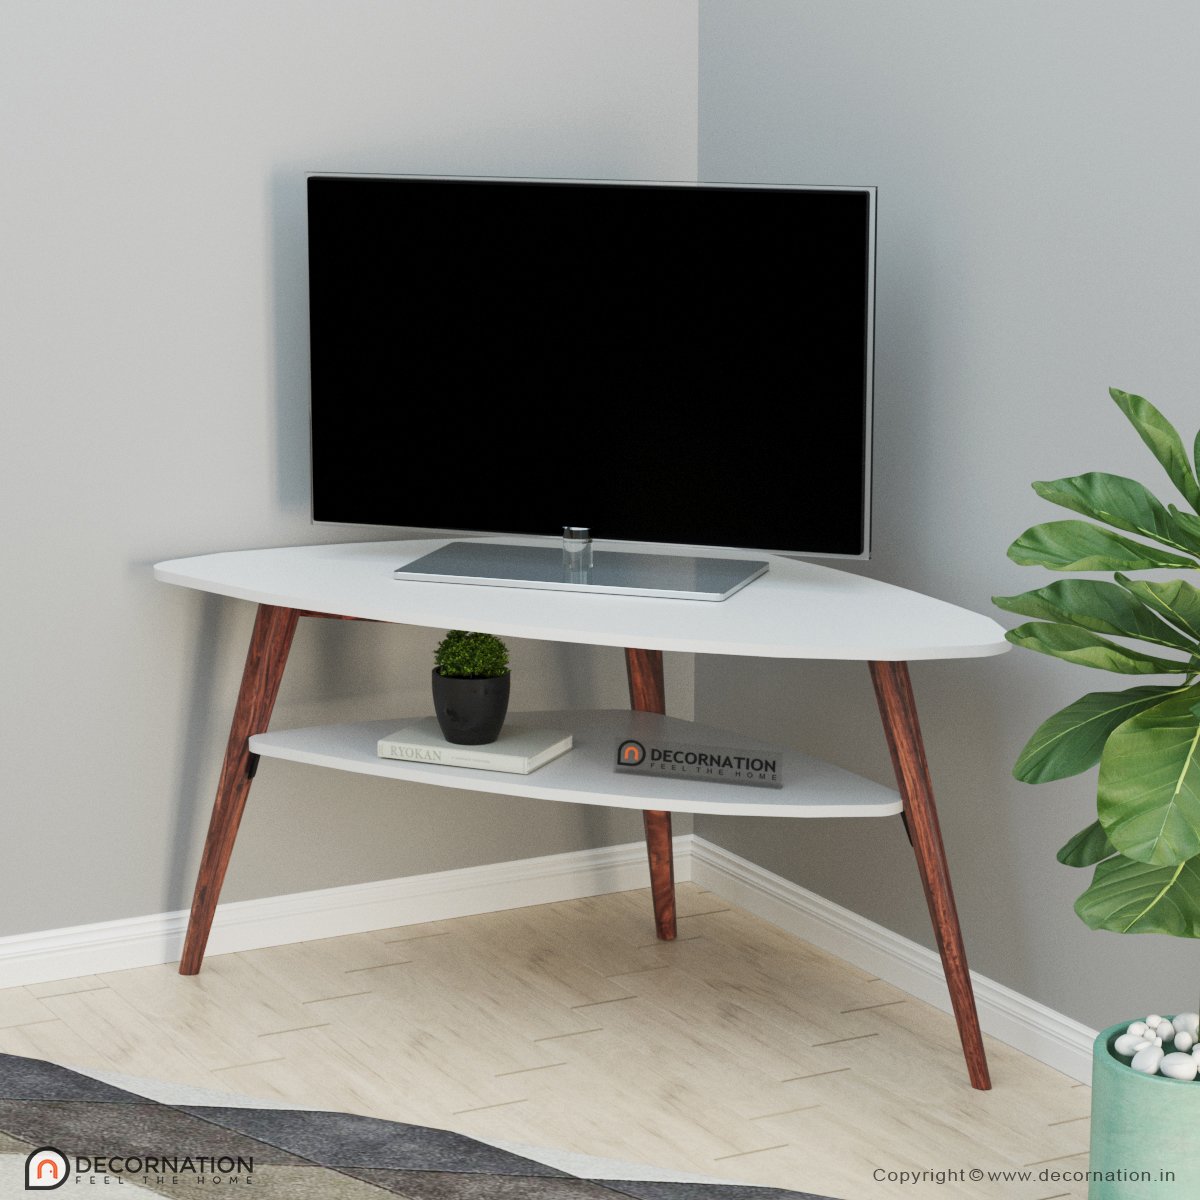 Wanli Livingroom TV Table with Shelf